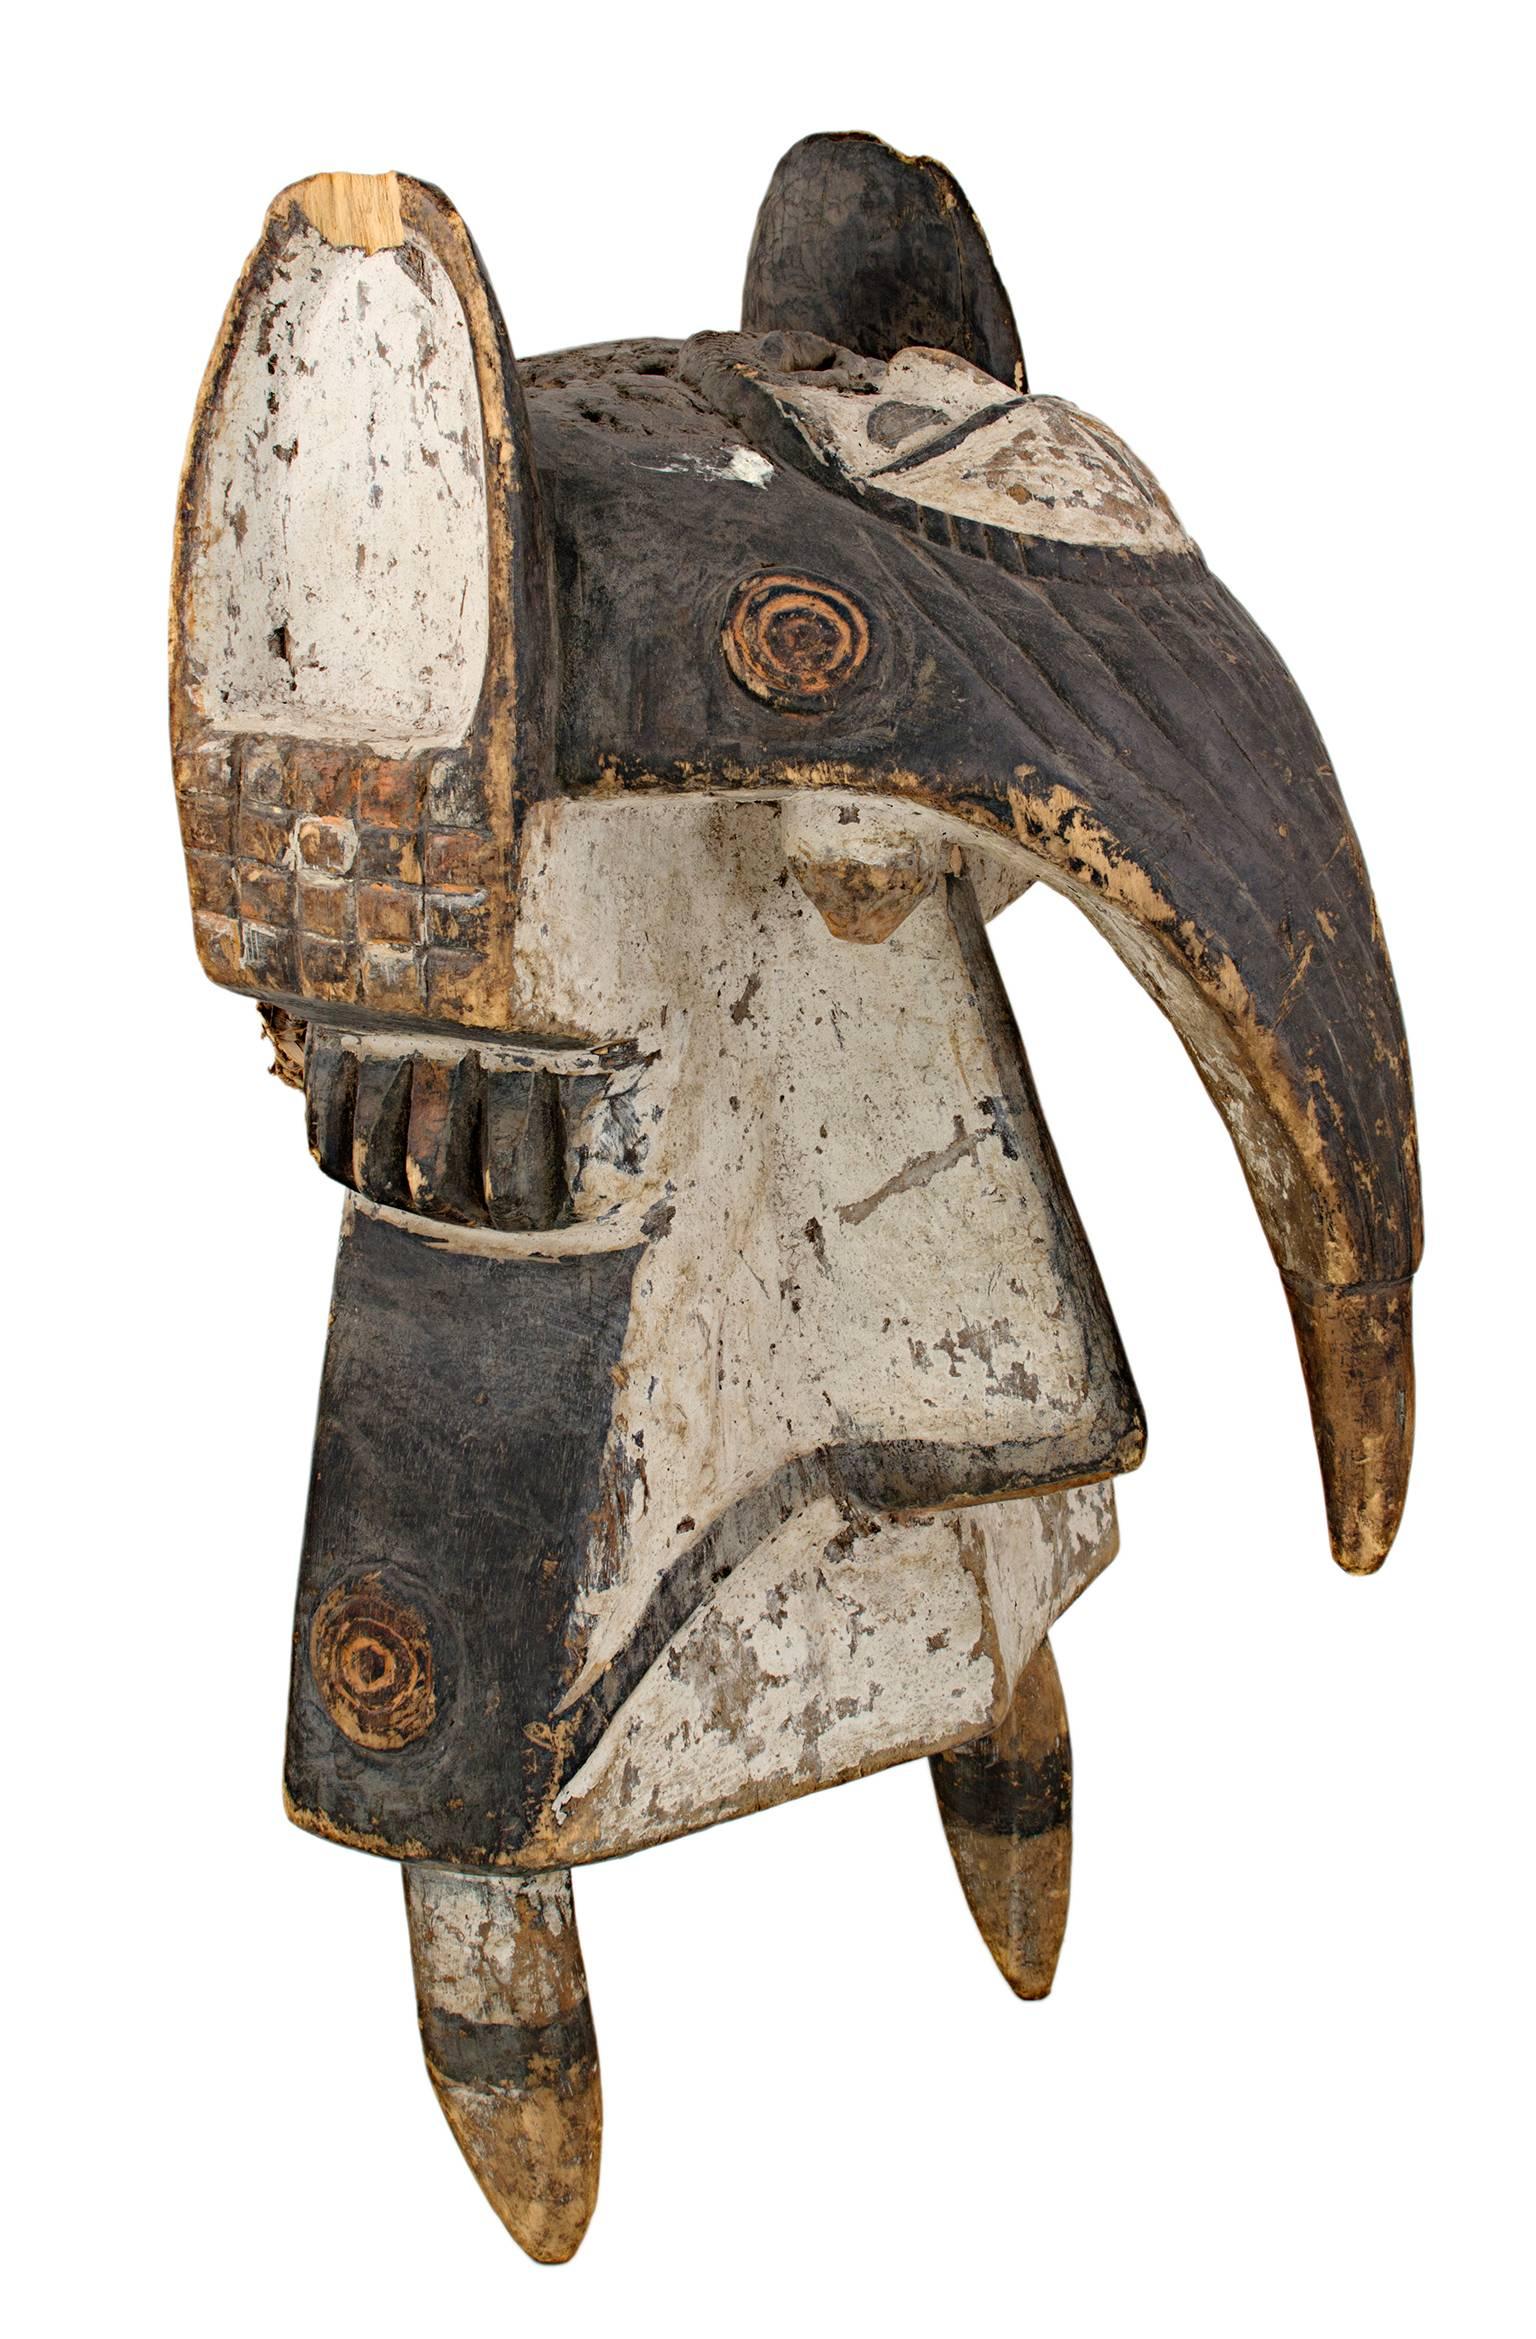 Masque de la tribu Wawa-Ibo ( tribu des Initiés du Nigeria), bois créé au Nigeria vers 1910 - Artisanat Sculpture par Unknown